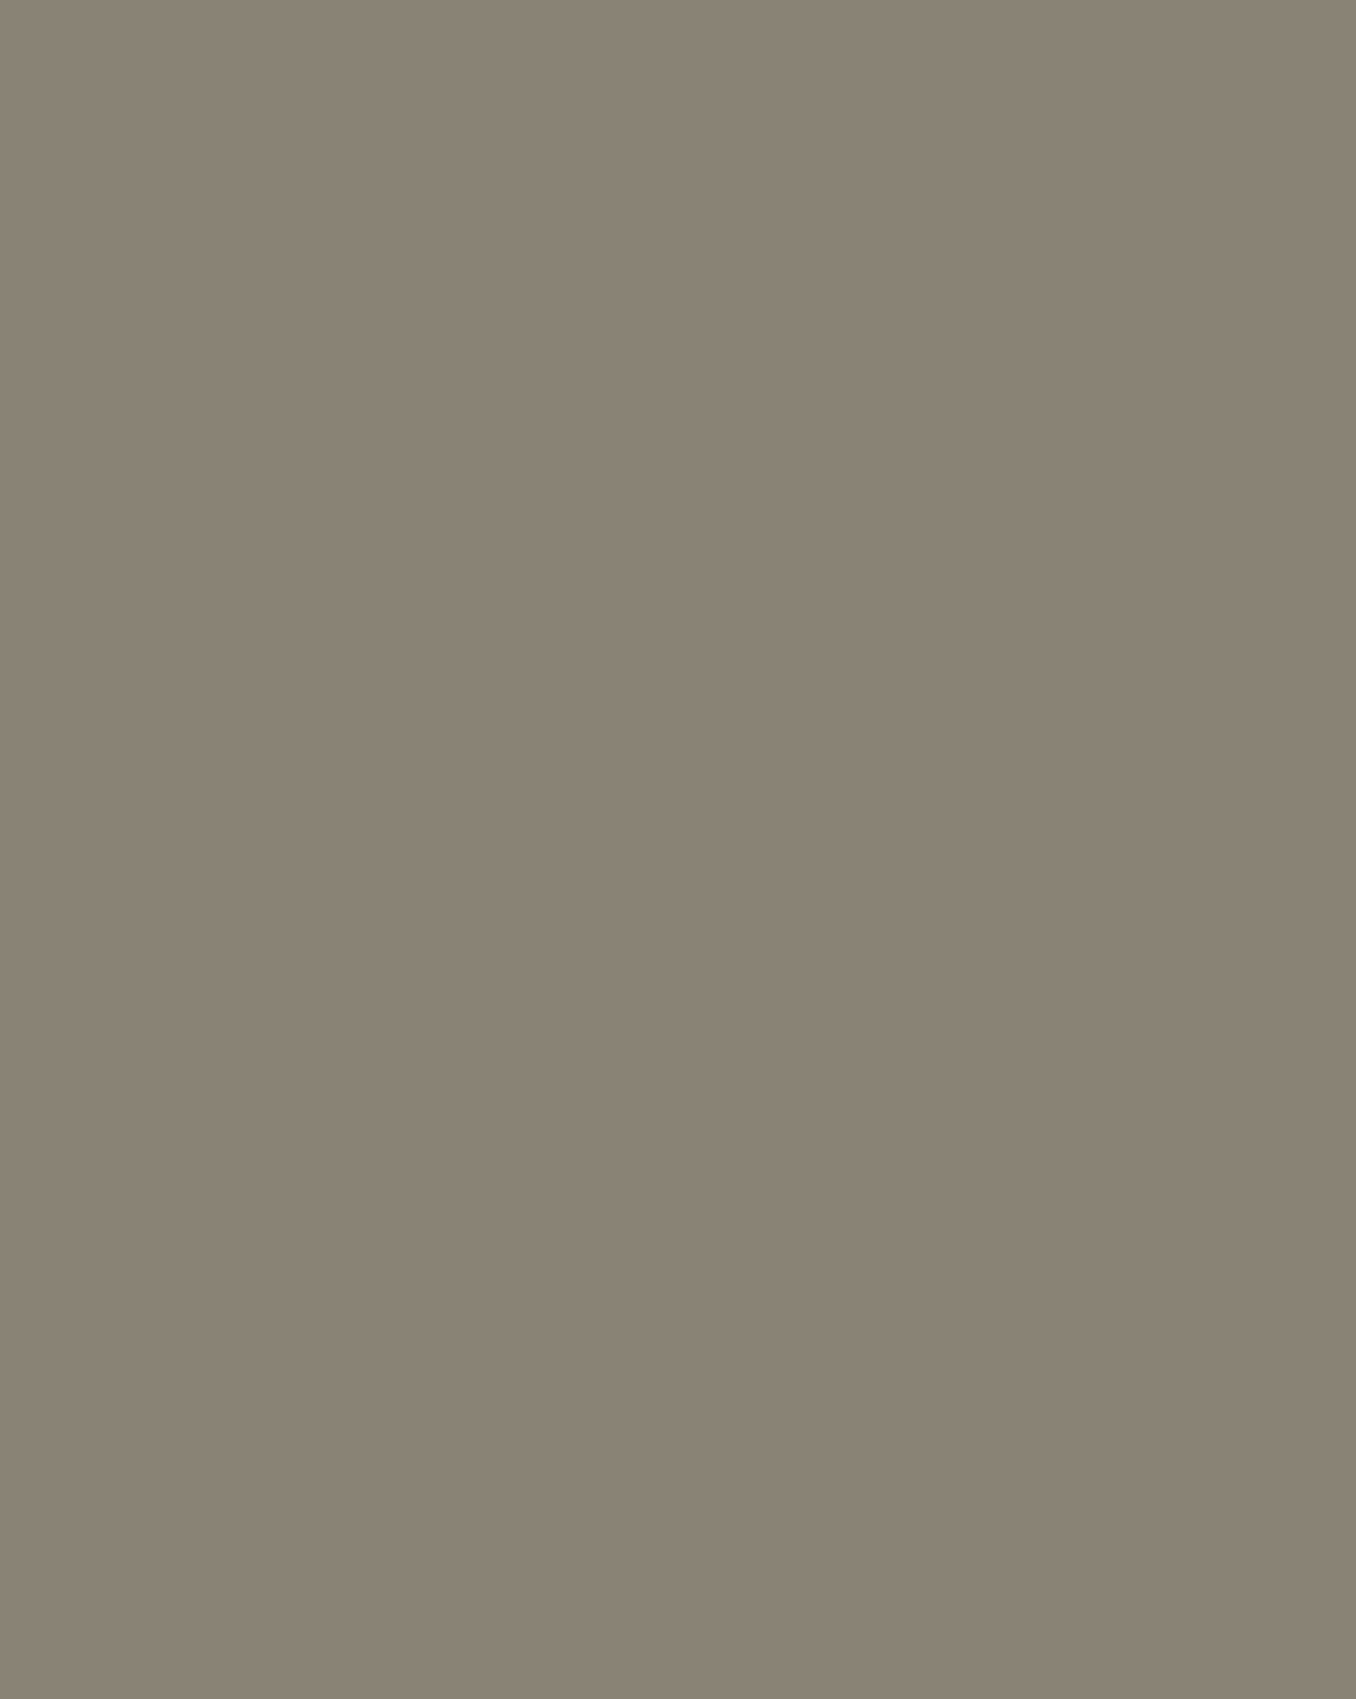 Илья Репин. Стрекоза. Портрет Веры Репиной. 1884. Государственная Третьяковская галерея, Москва